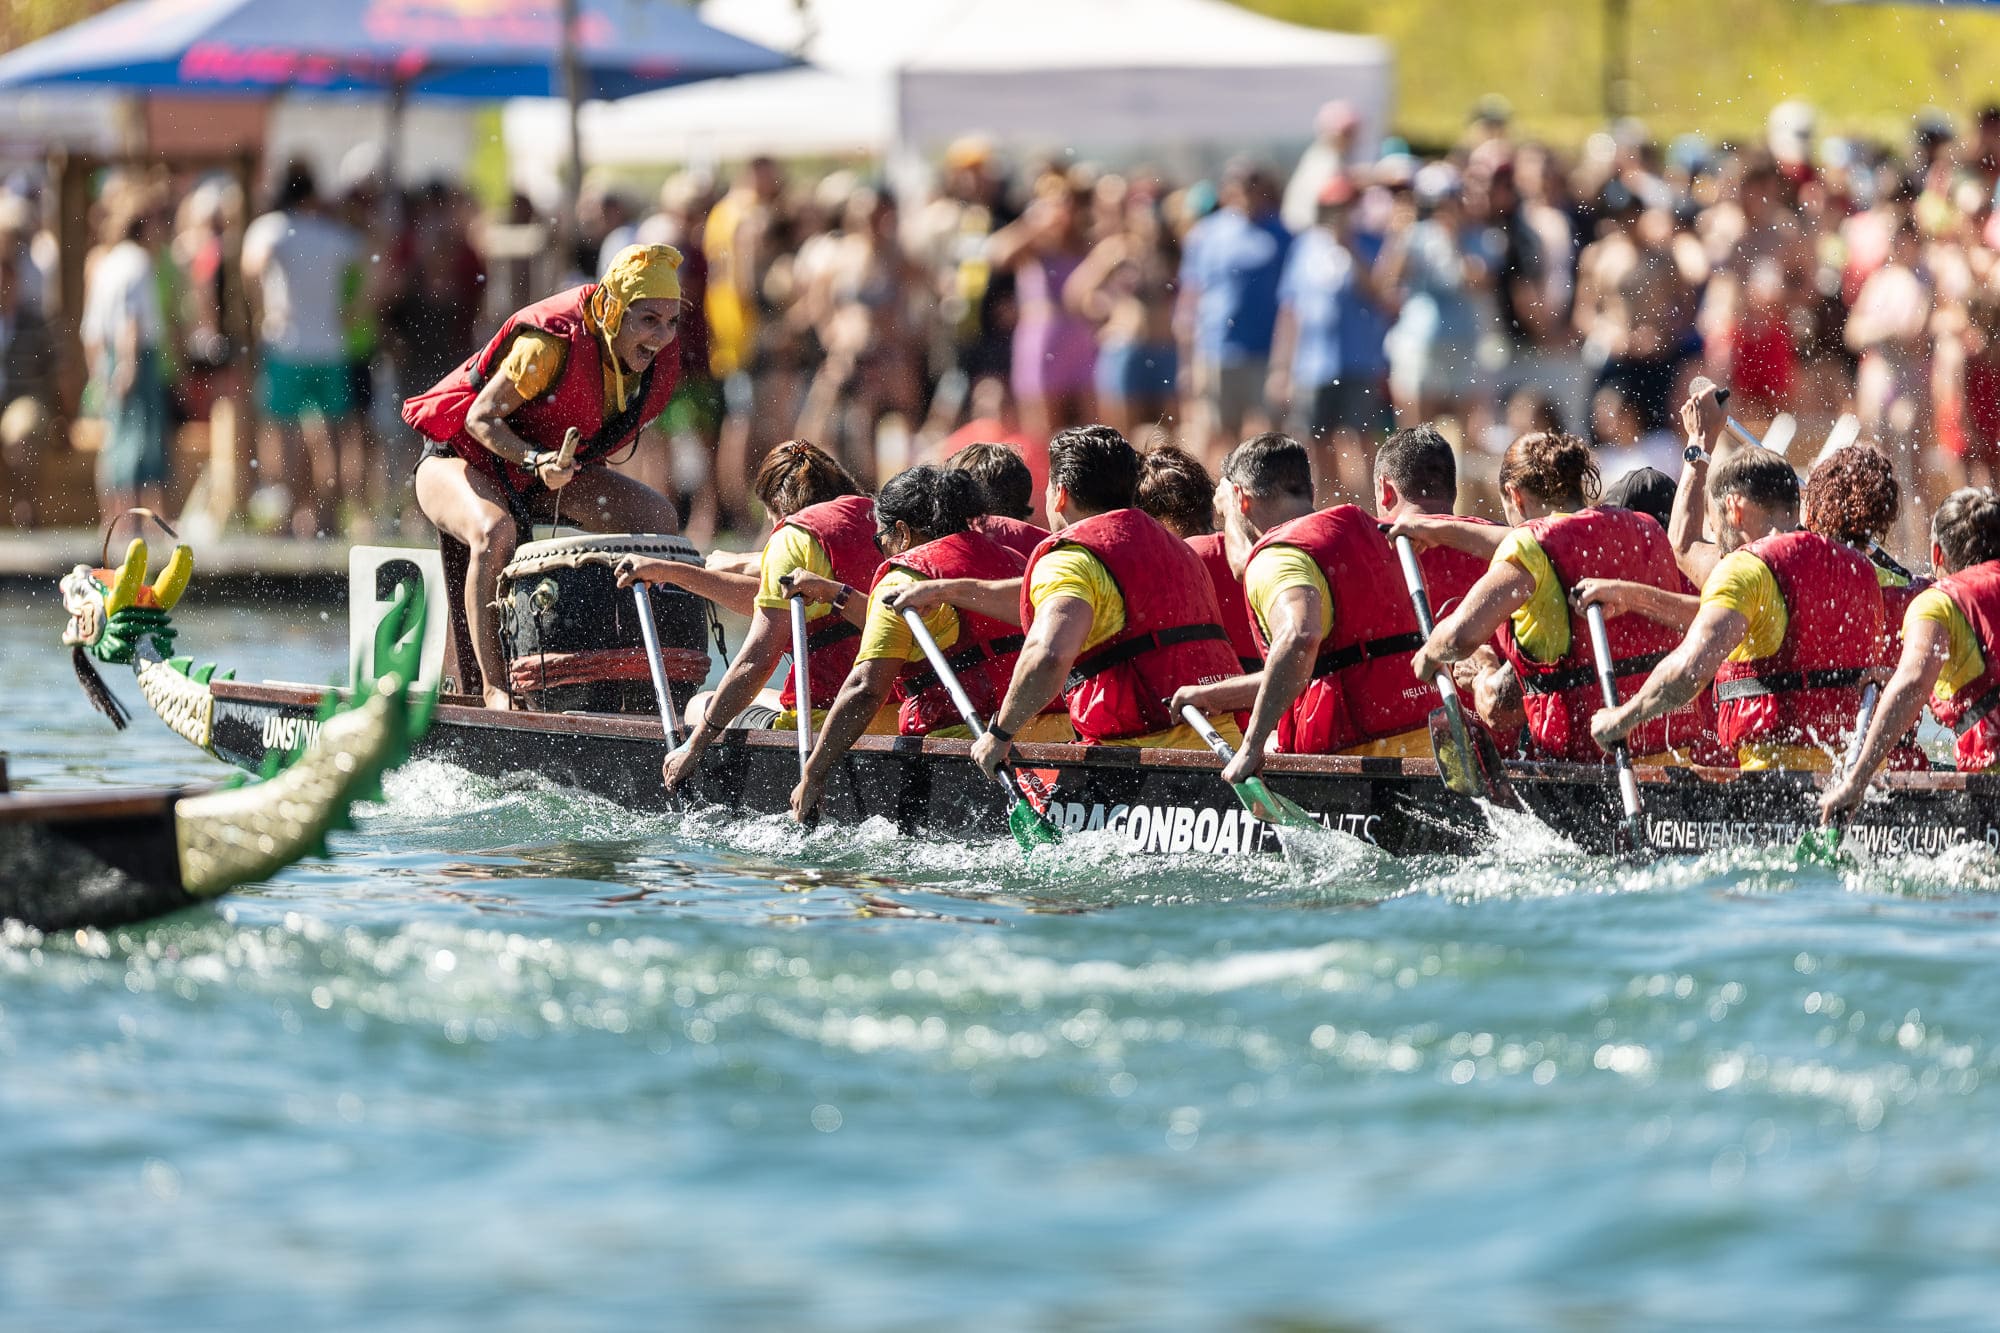 Drachenbootrennen in Eglisau - Ein Highlight zu Honkongs 25-jährigem Jubiläum